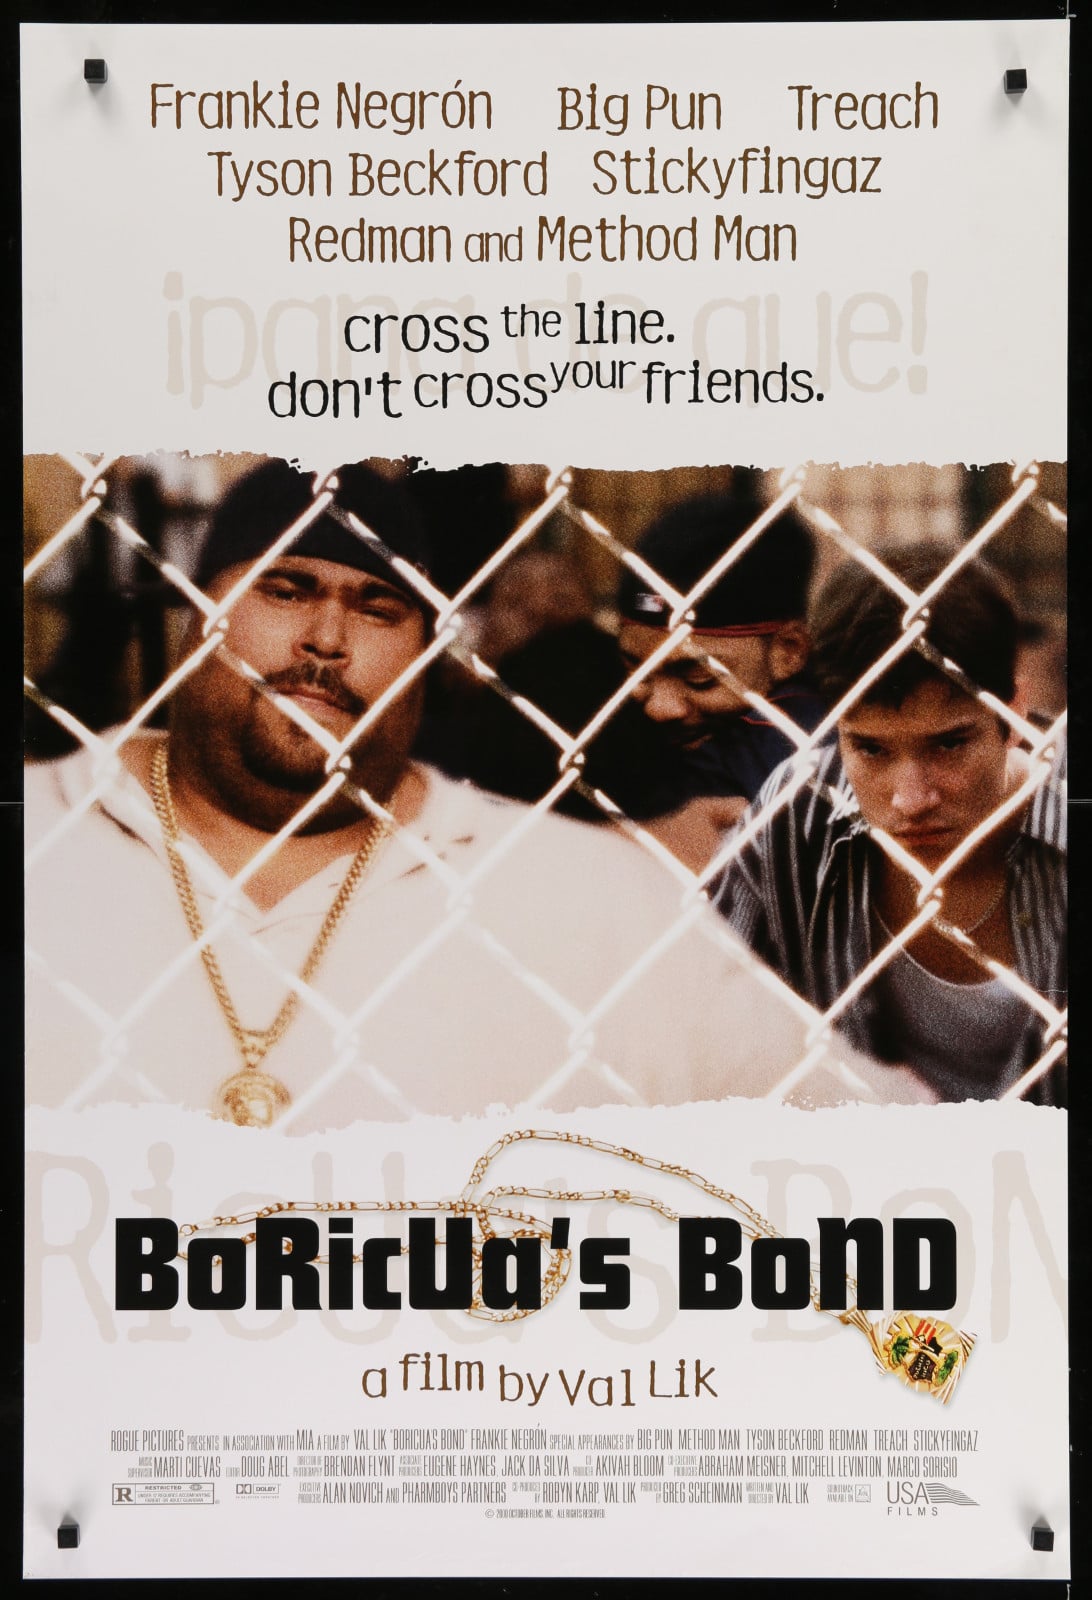 Plakat von "Boricua's Bond"